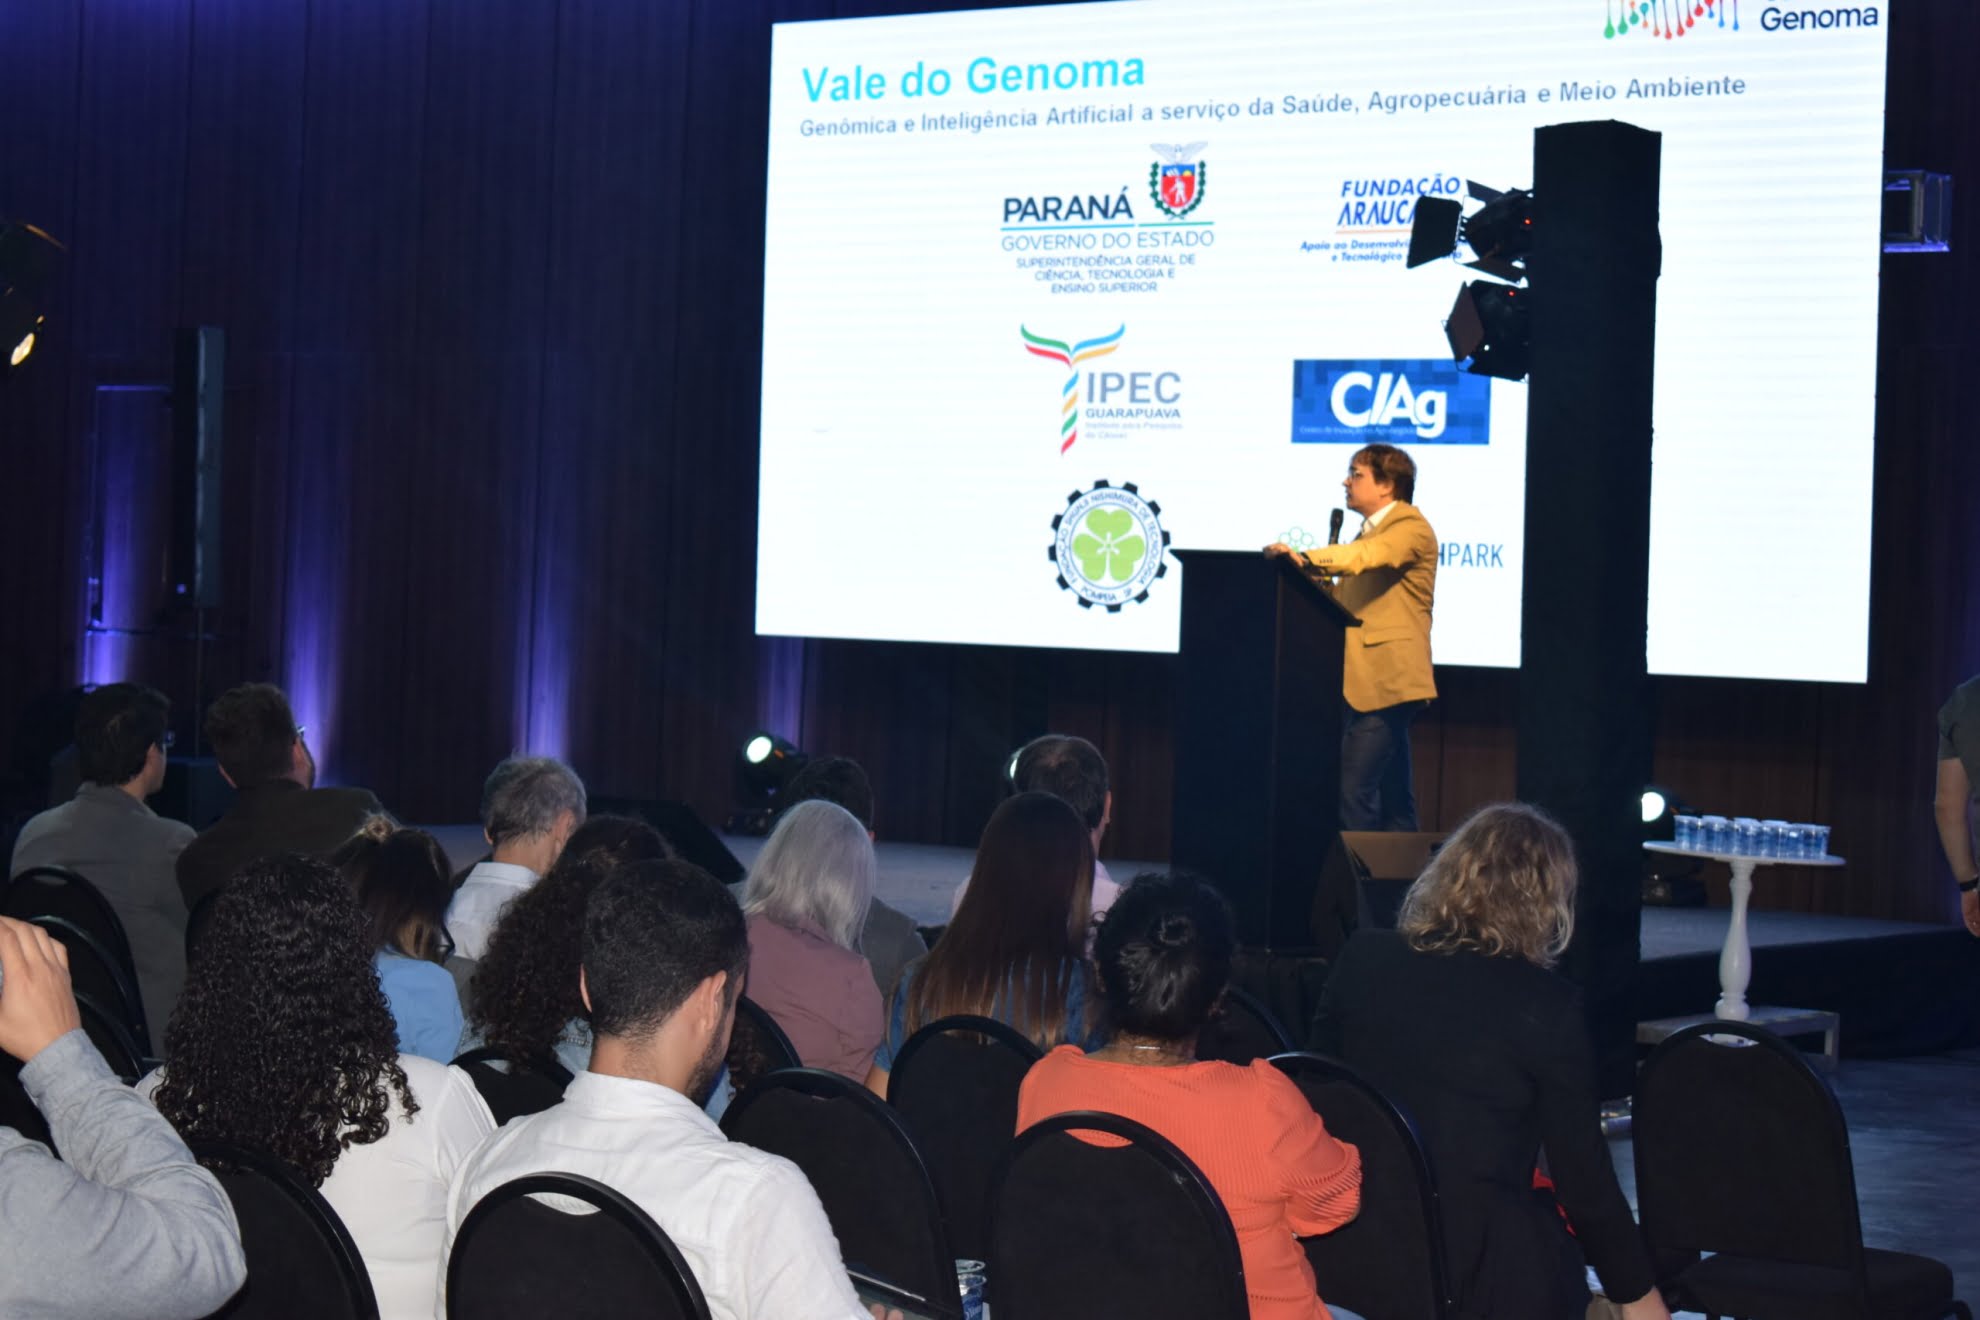 Genomas Paraná utilizará IA e ciência de dados em suas pesquisas